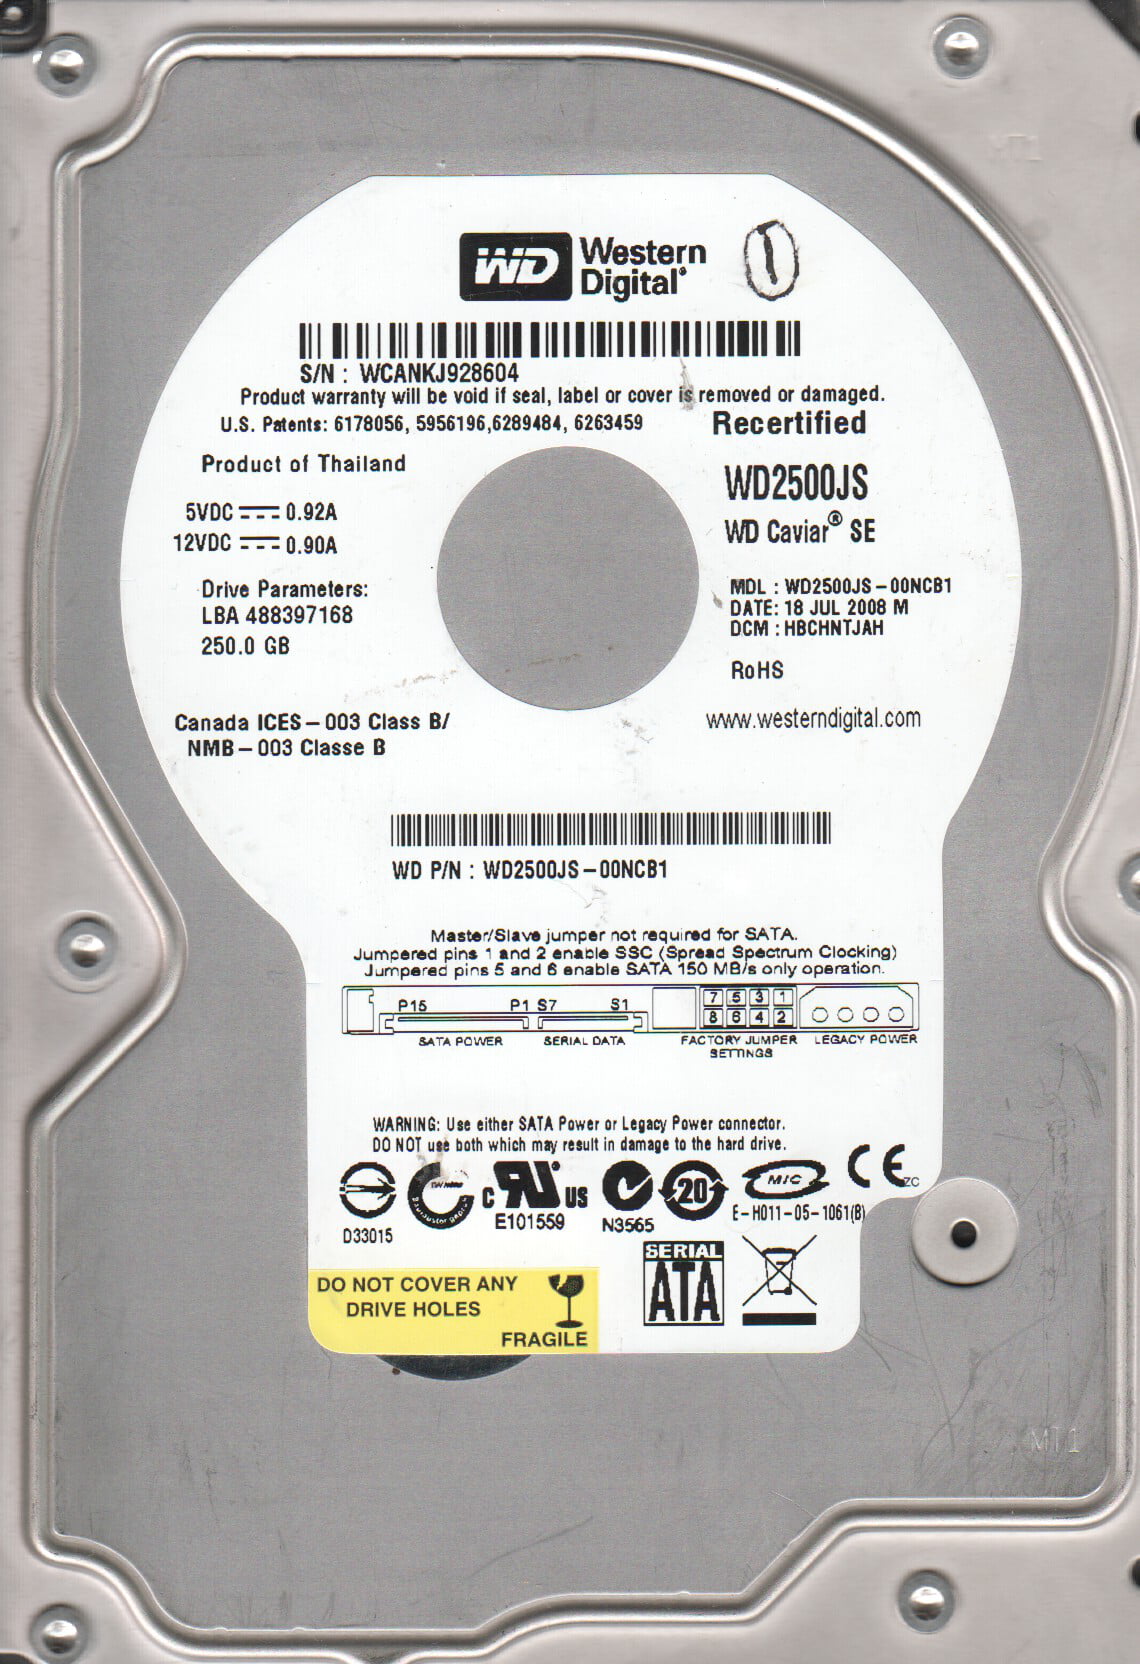 DCM HBCHNT2AAN WD2500JS-00NCB1 Western Digital 250GB SATA 3.5 Hard Drive 